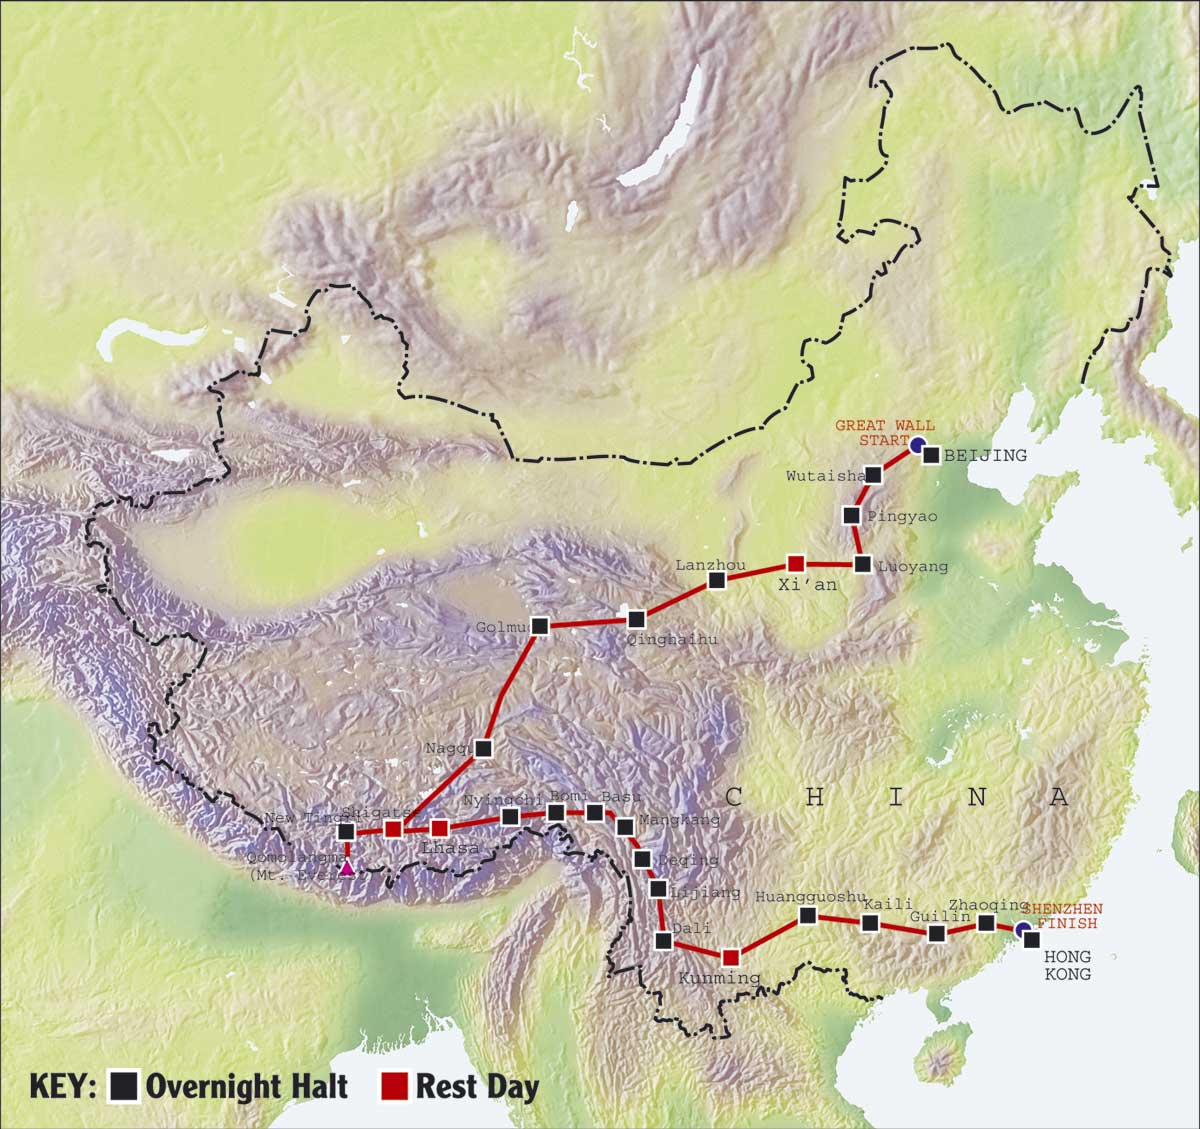 Какова длина великой китайской. Протяженность Великой китайской стены в километрах на карте. Протяженность Великой китайской стены. Китайская стена протяженность в км. Протяжённость китайской стены в километрах на карте.